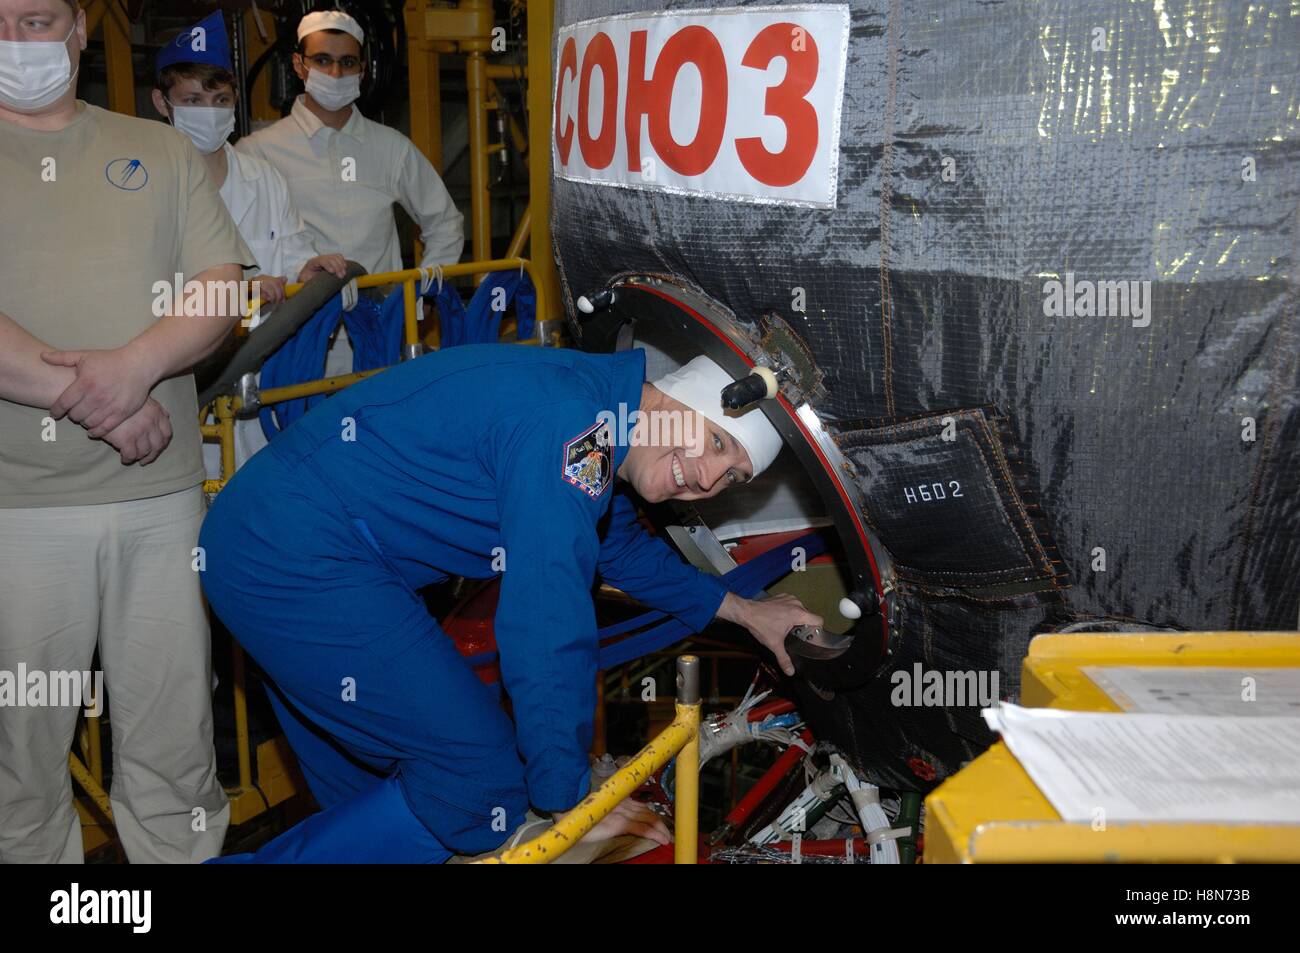 NASA internationale Raumstation Expedition 50-51 backup Crew Mitglied US-amerikanischer Astronaut Jack Fischer klettert an Bord der Sojus MS-03-Raumschiff während des Trainings vor dem Start in Baikonur Kosmodrom Integration Anlage 2. November 2016 in Baikonur, Kasachstan. Stockfoto